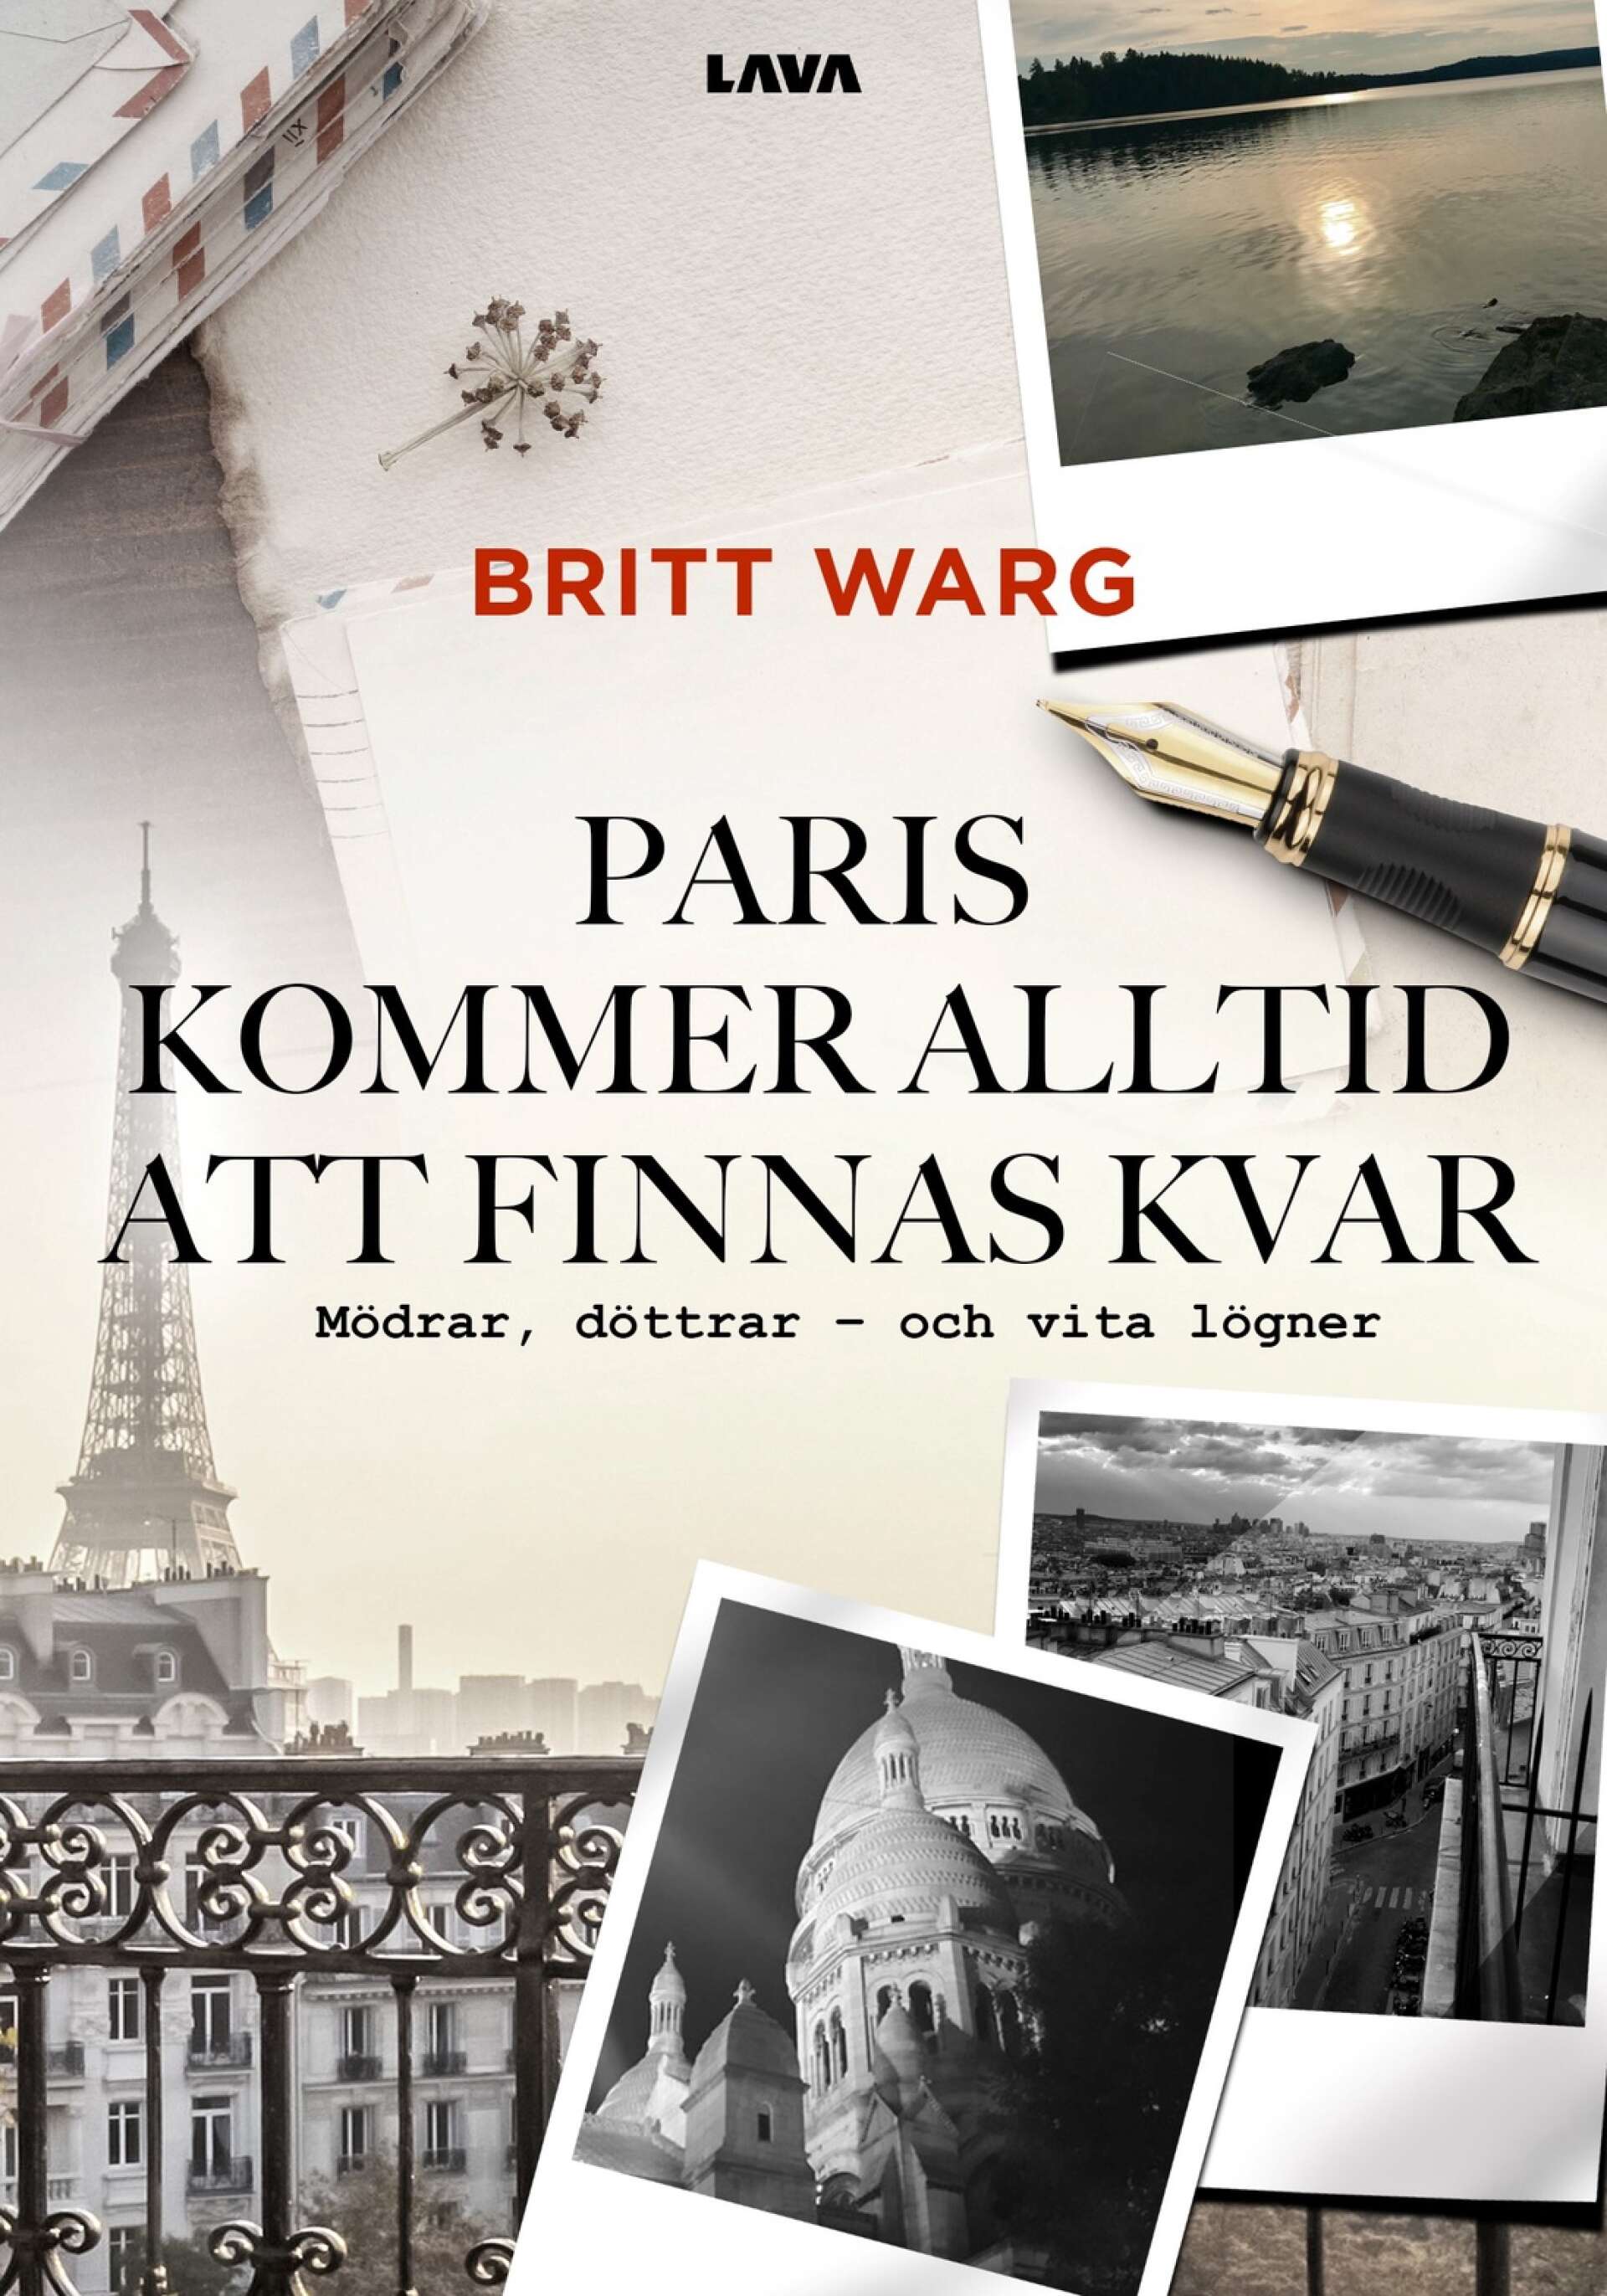 Britt Warg har redan kommit halvvägs med en uppföljare till sin debutroman. 